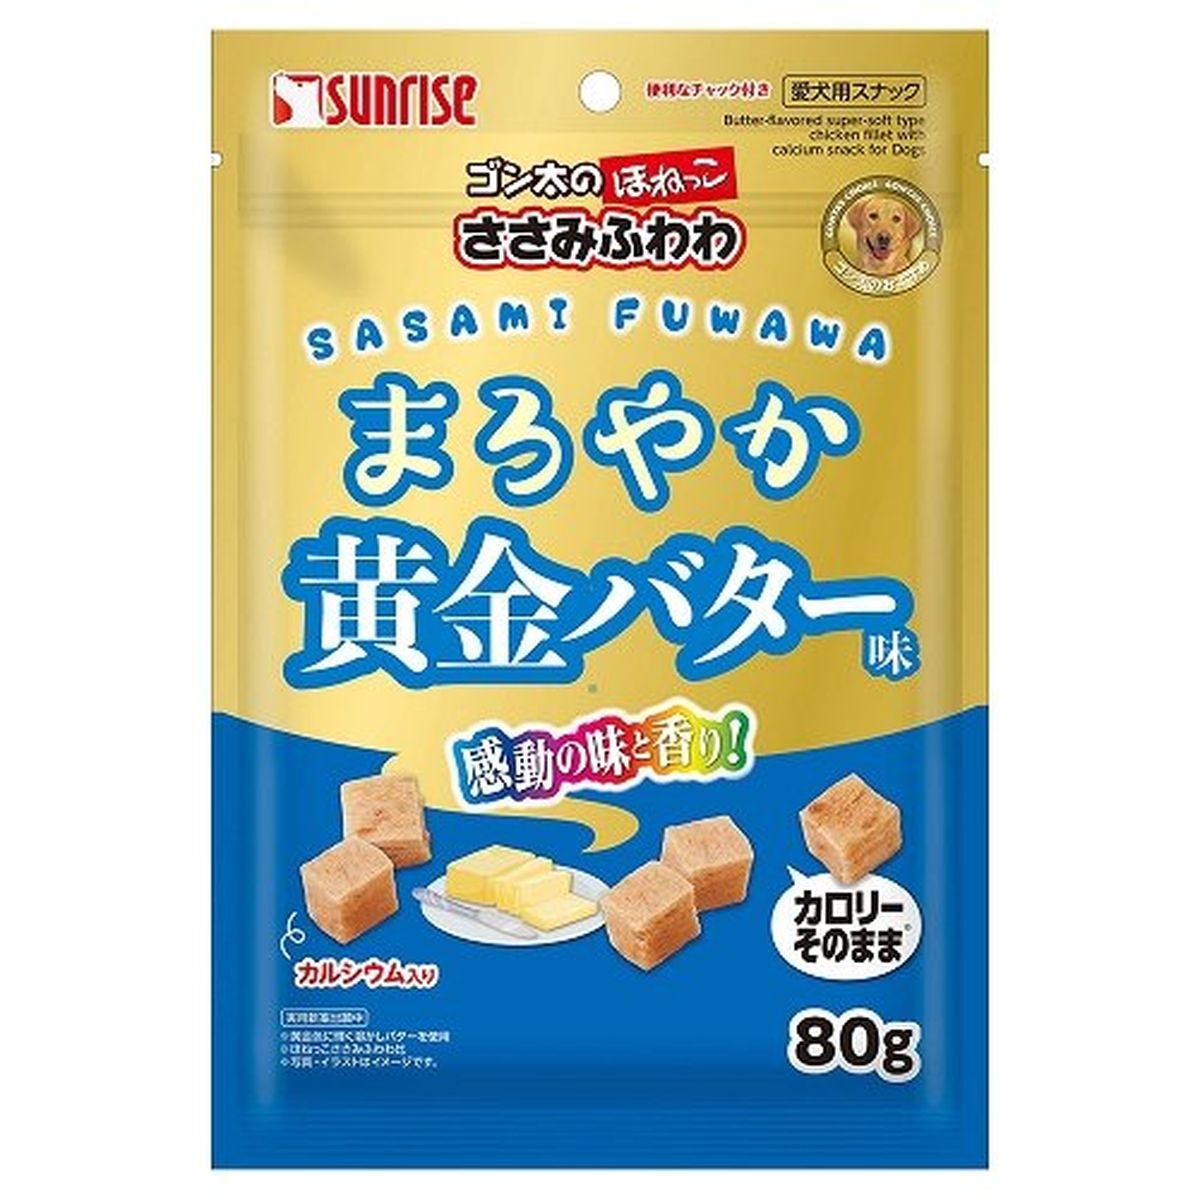 ゴン太ノホネッコ ササミフワワ マロヤカ黄金バター味 80g×48